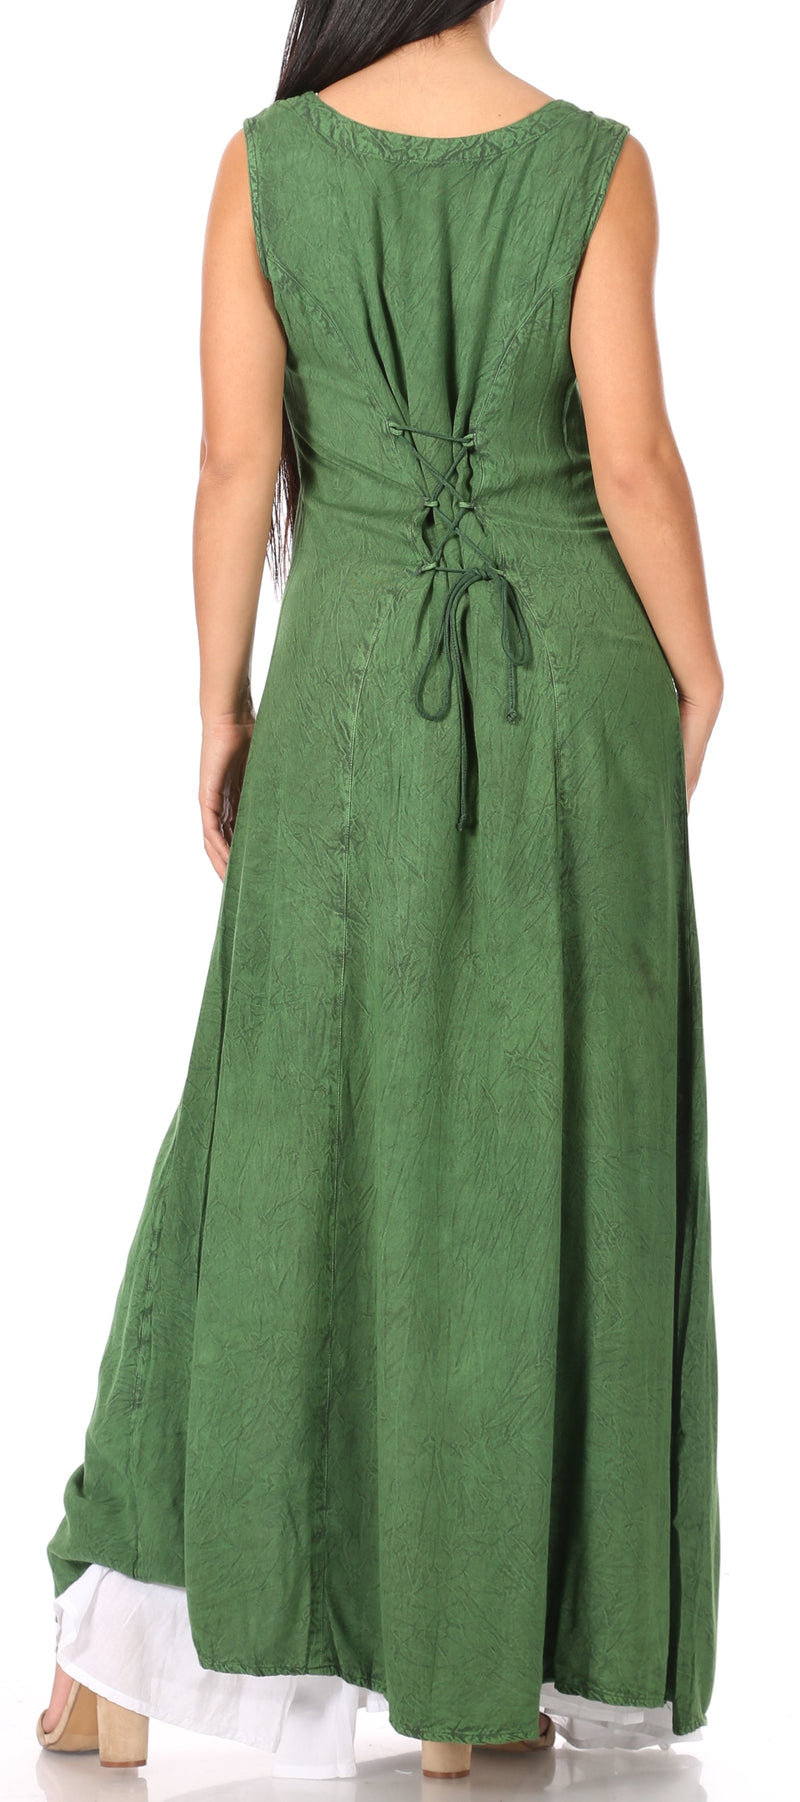 Sakkas Riva Women's Sleeveless Chemise + Over Dress Medieval Celtic Renaissance